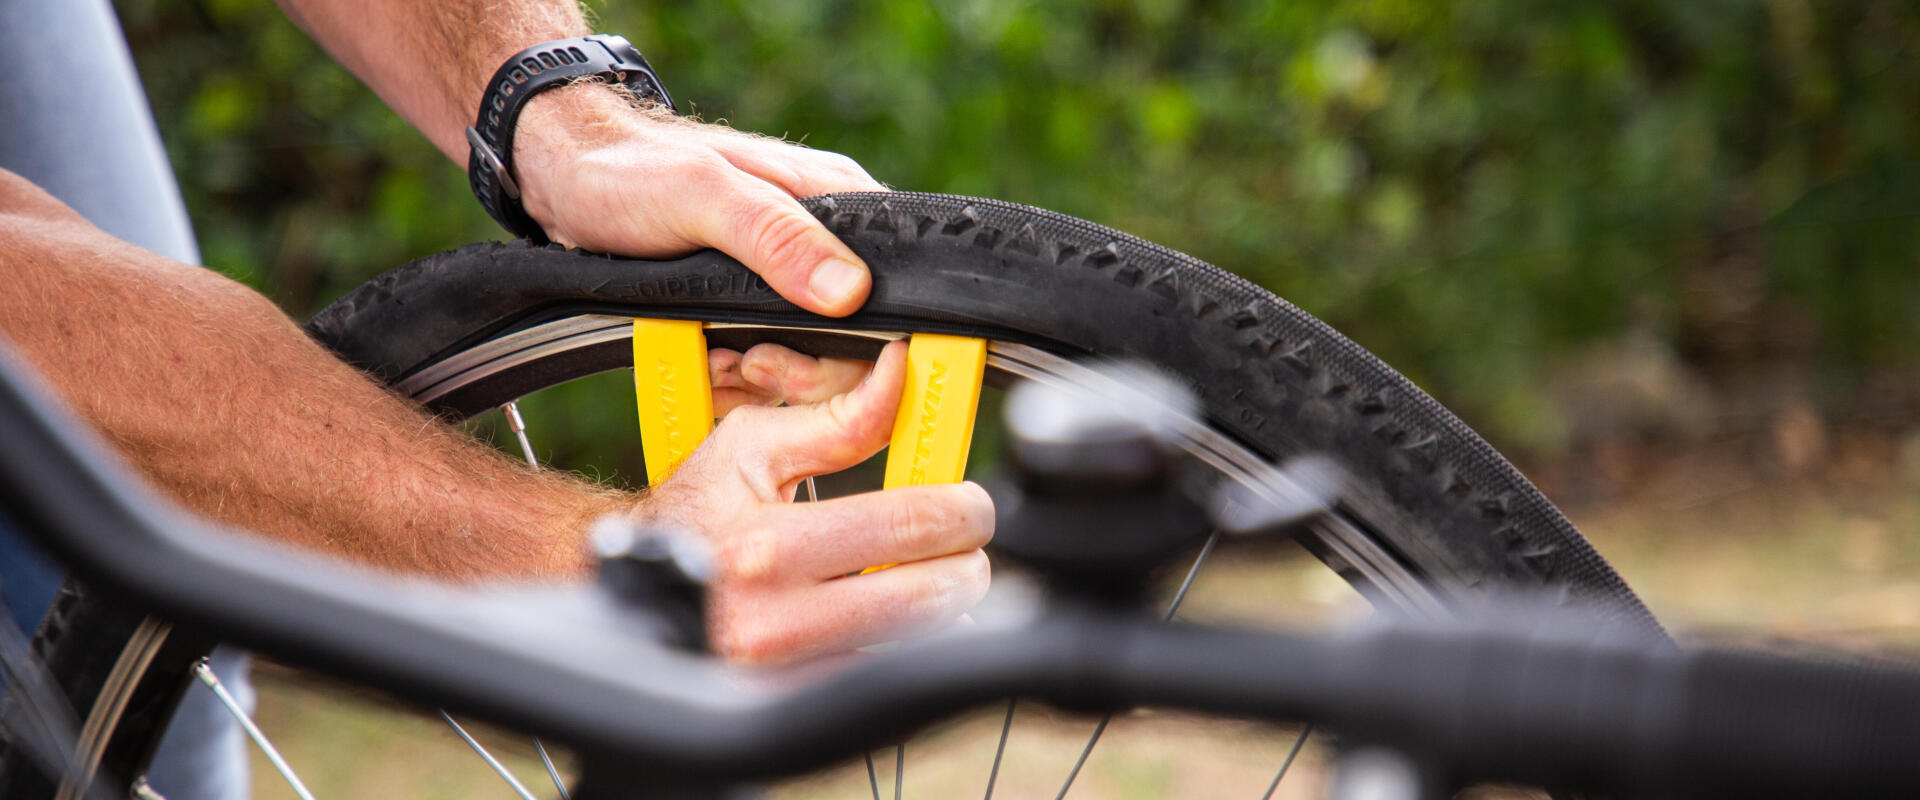 Reparar um pneu de bicicleta